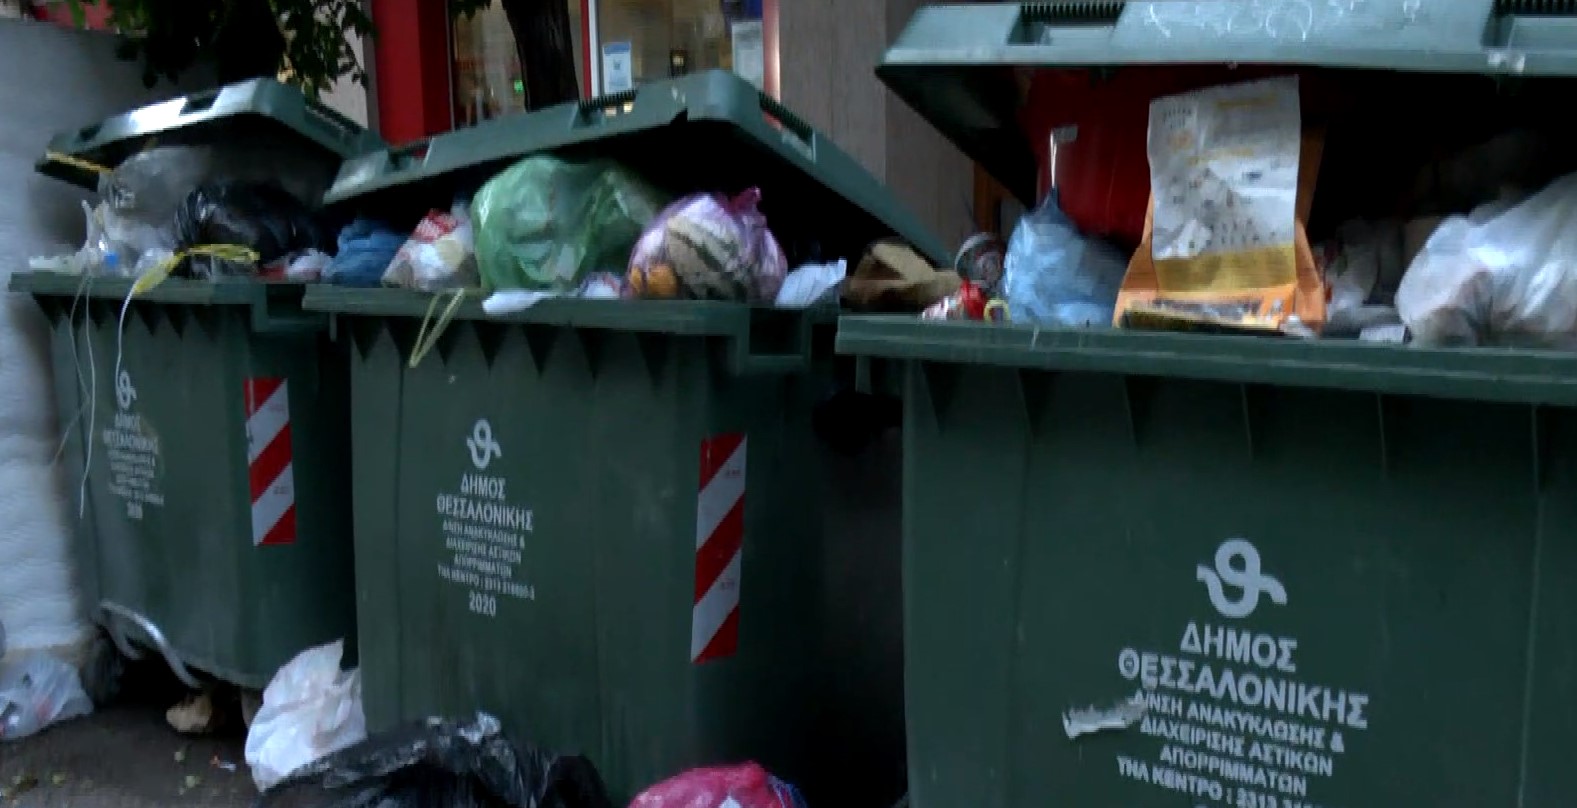 Θεσσαλονίκη: Τα σκουπίδια ξεχειλίζουν από τους κάδους – Αποπνικτική ατμόσφαιρα